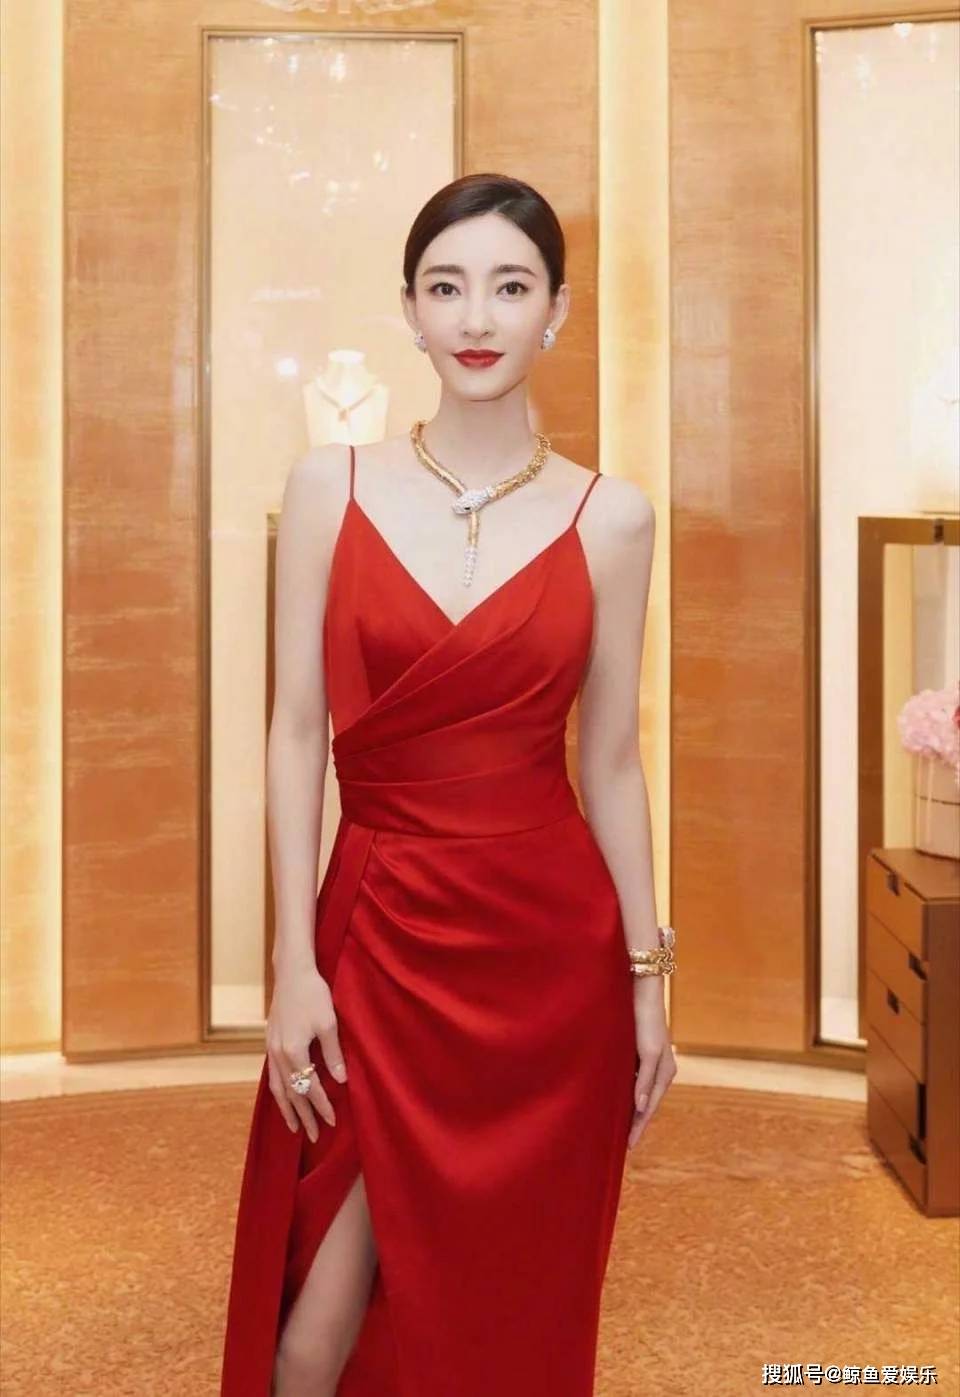 王丽坤的美是骨子里带来的,彰显高贵迷人气质的红色长裙傍身,性感十足